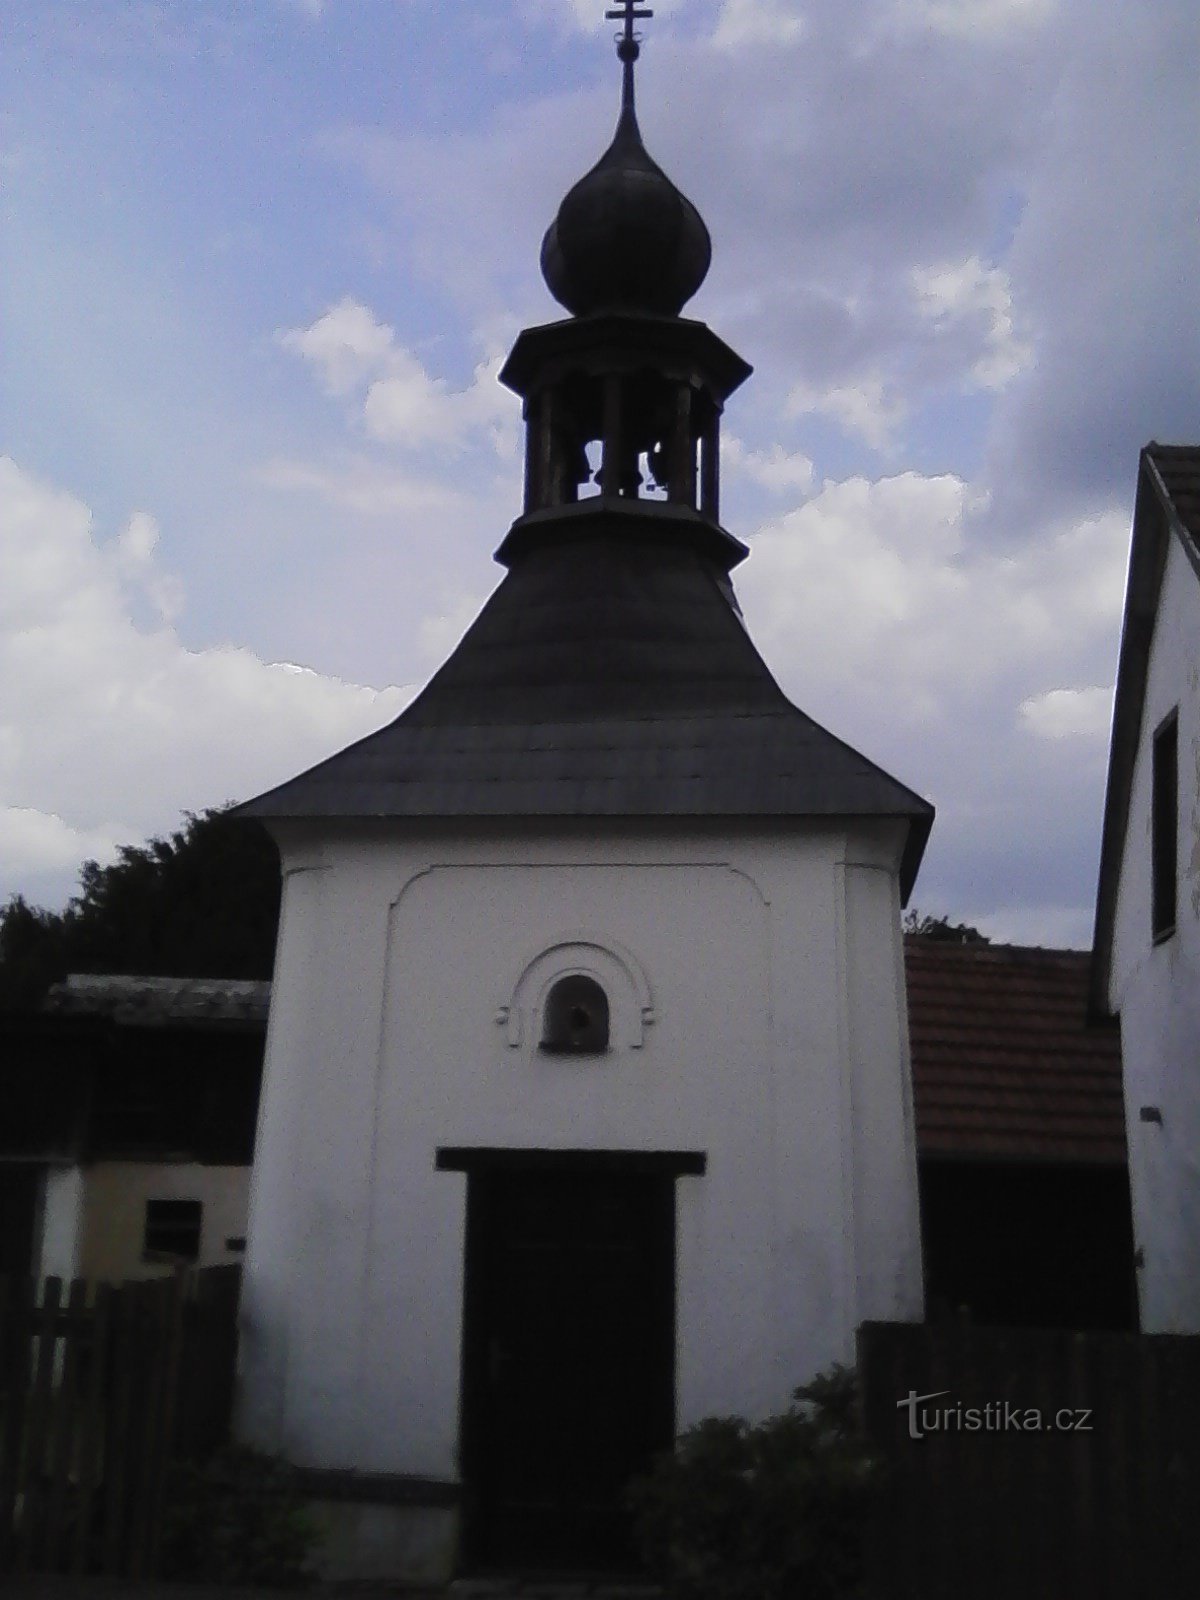 2. Capela satului din Horní Hořice.